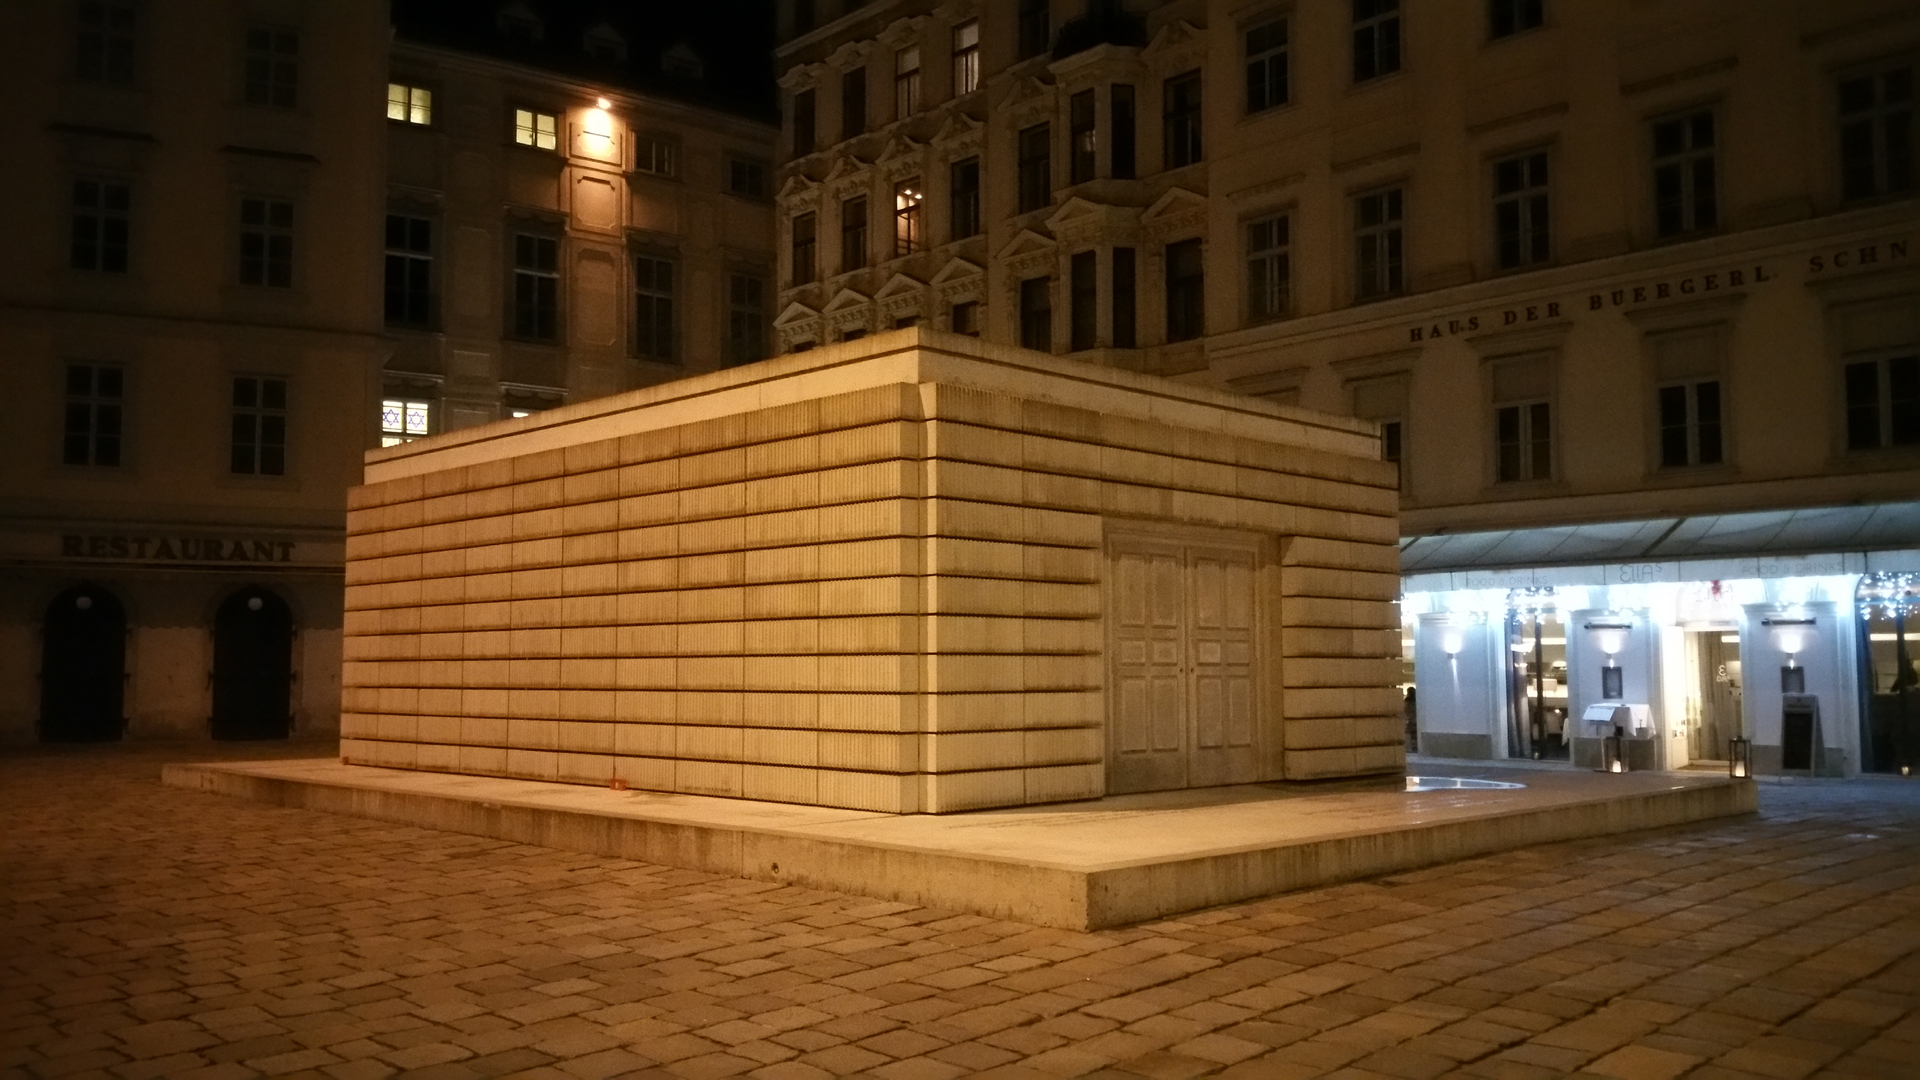 Fotostrecke Wien bei Nacht 20: Mahnmal für die österreichischen jüdischen Opfer der Schoah am Judenplatz in der Wiener Innenstadt (1. Bezirk)